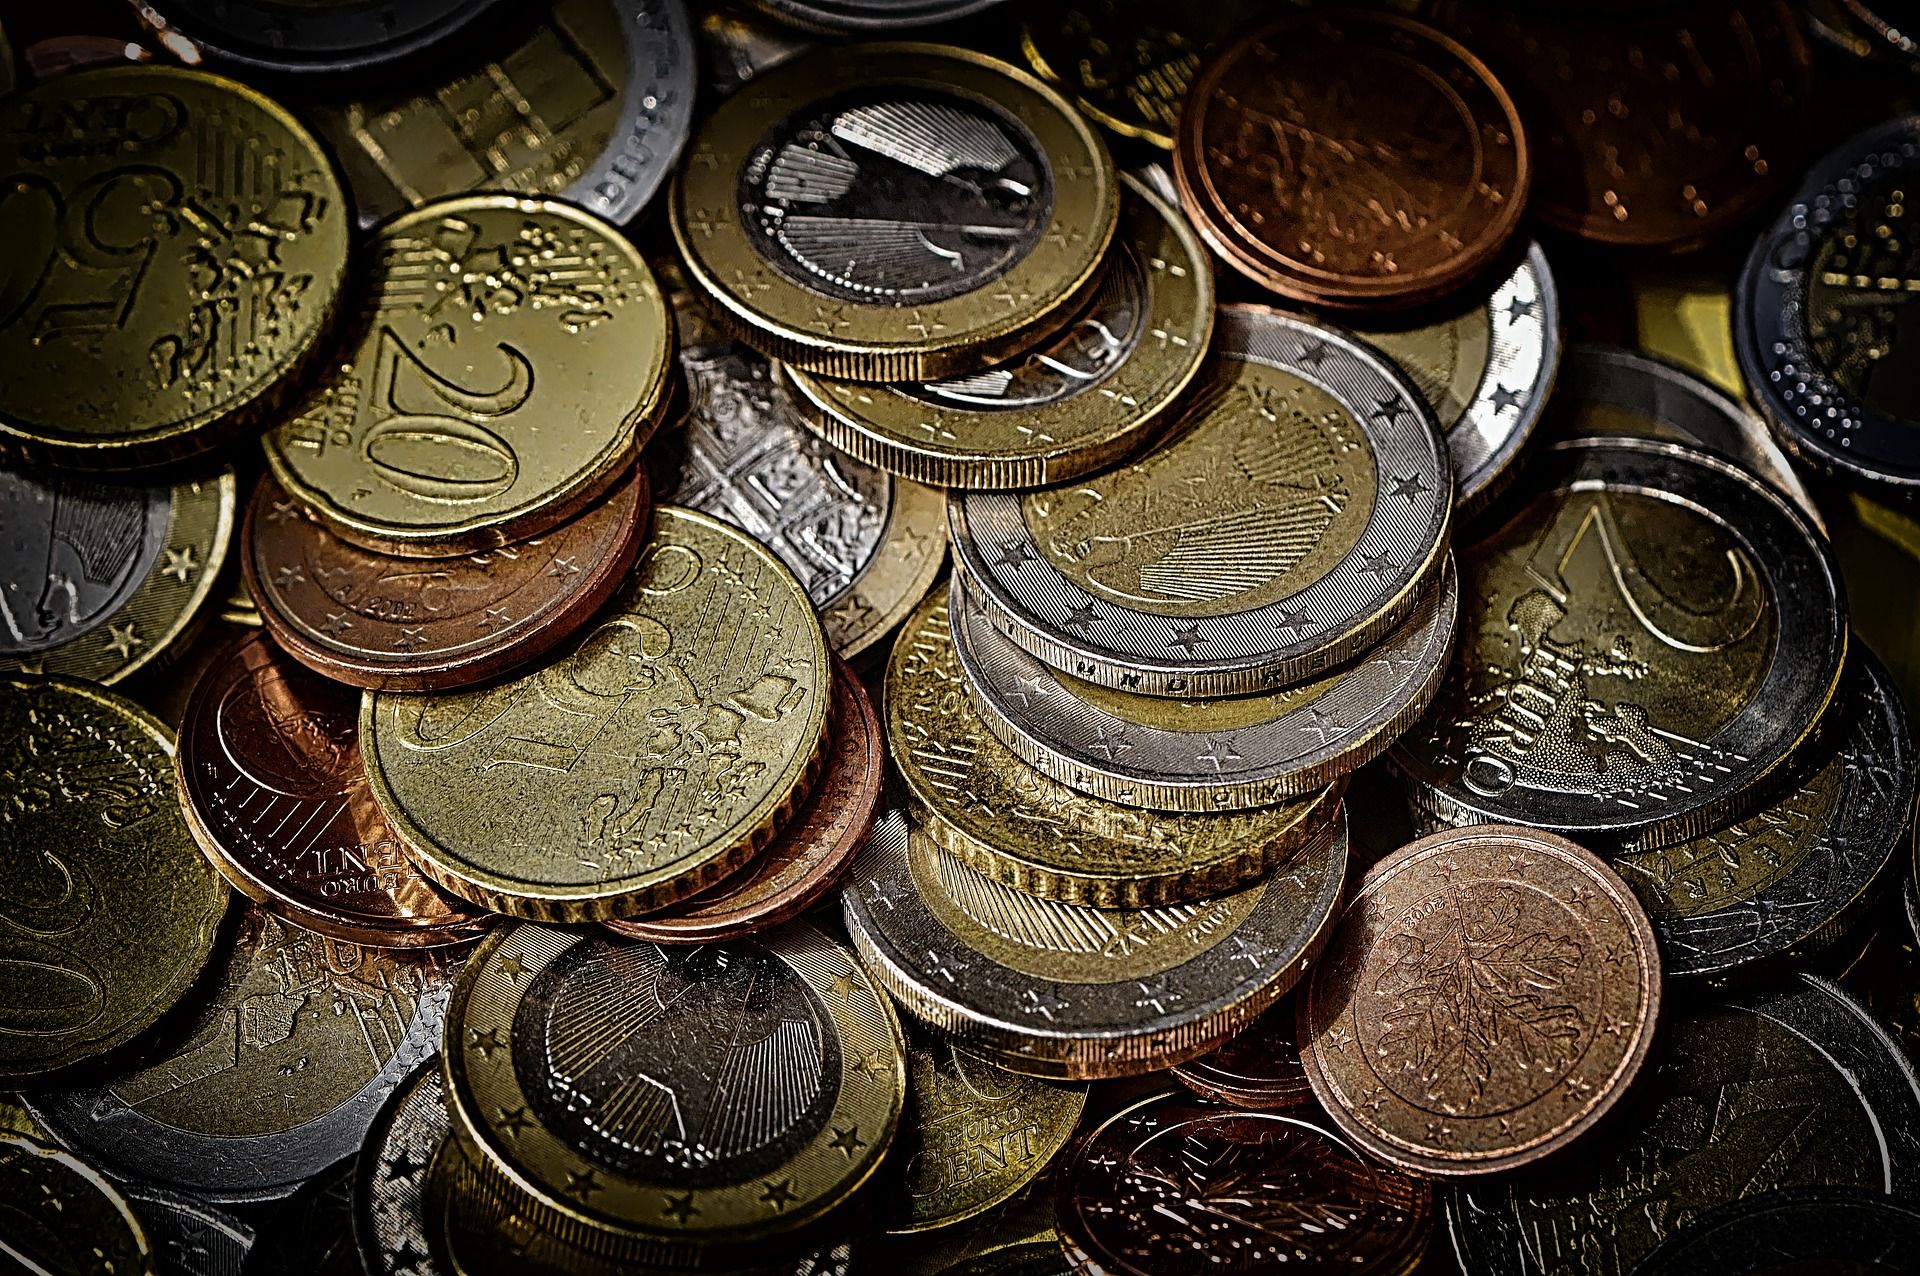 monedes euro - pixabay